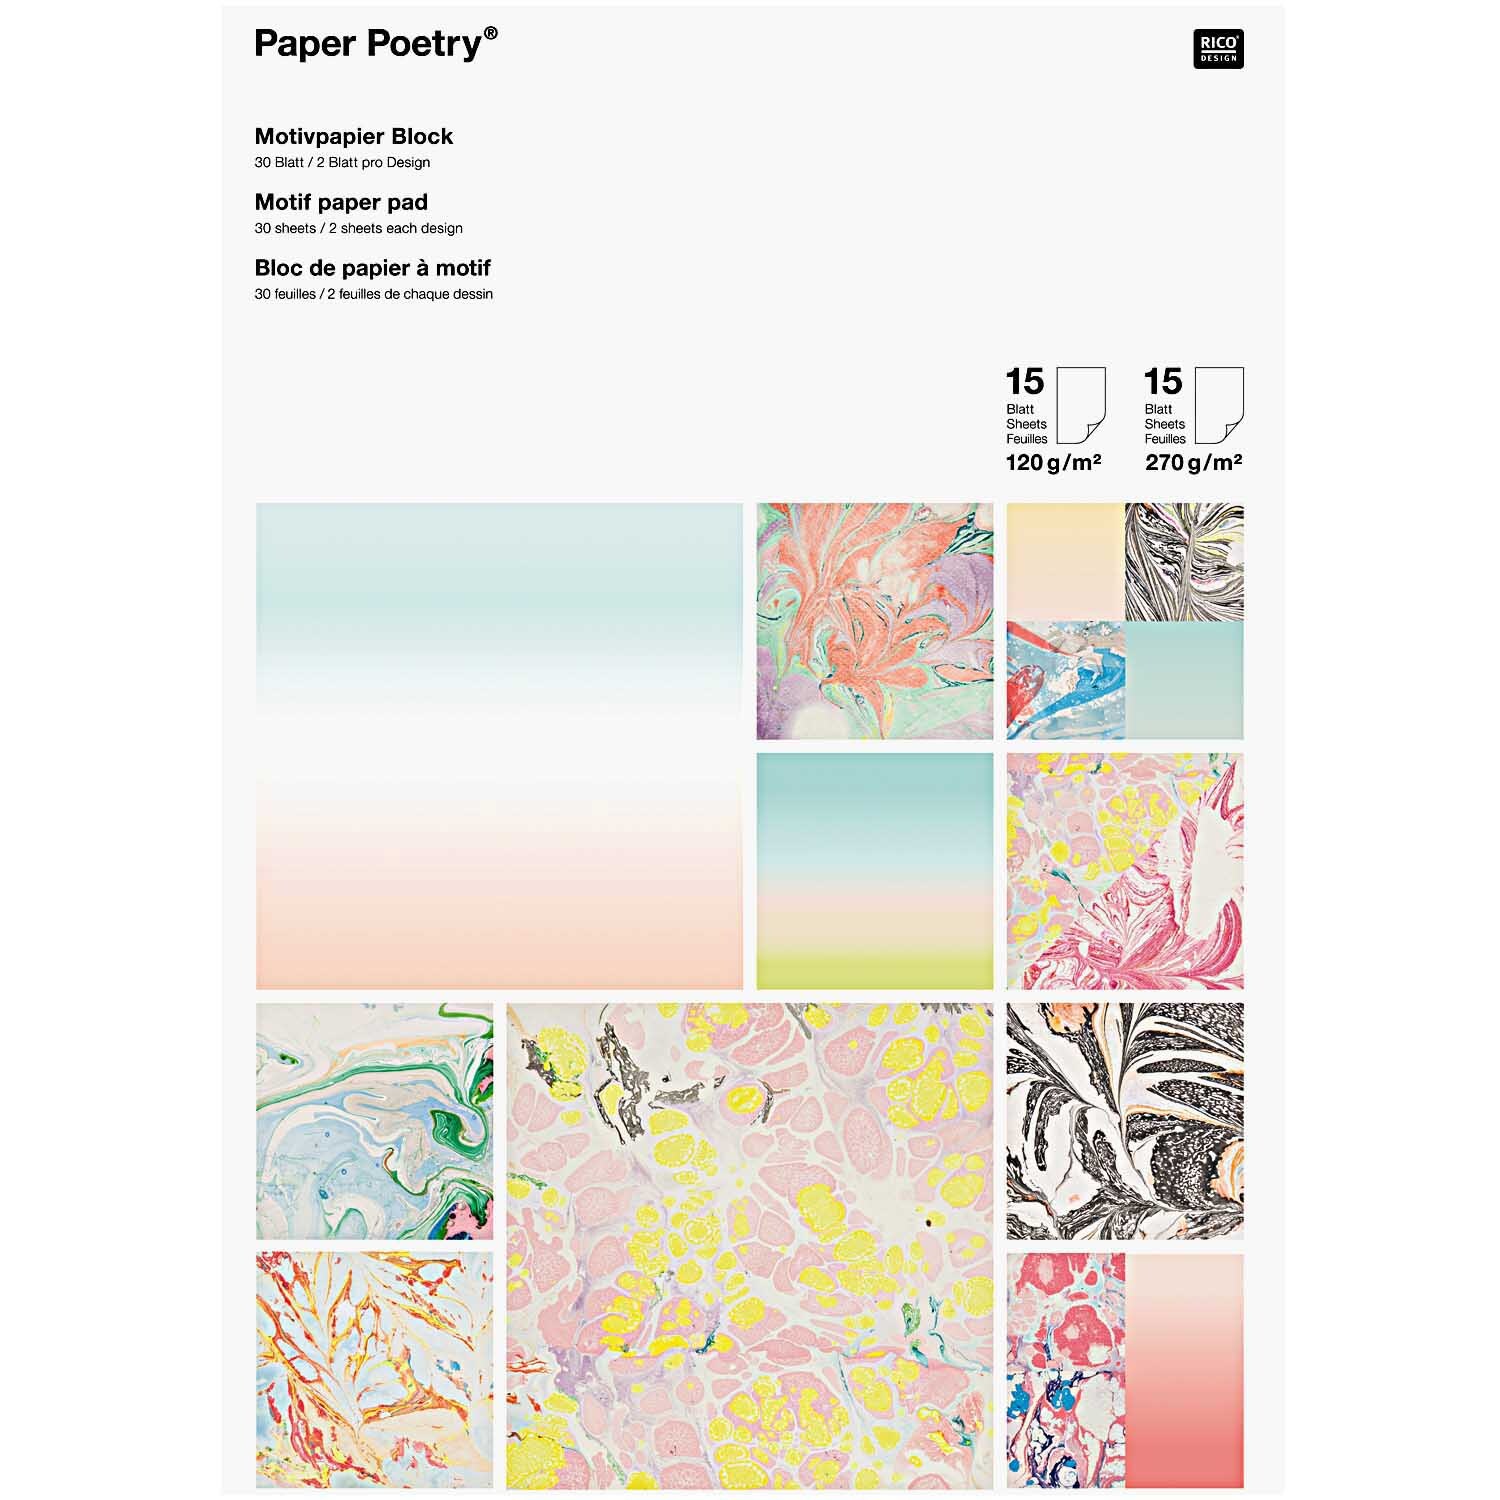 Paper Poetry Motivpapier Block marmoriert 21x30cm 30 Blatt